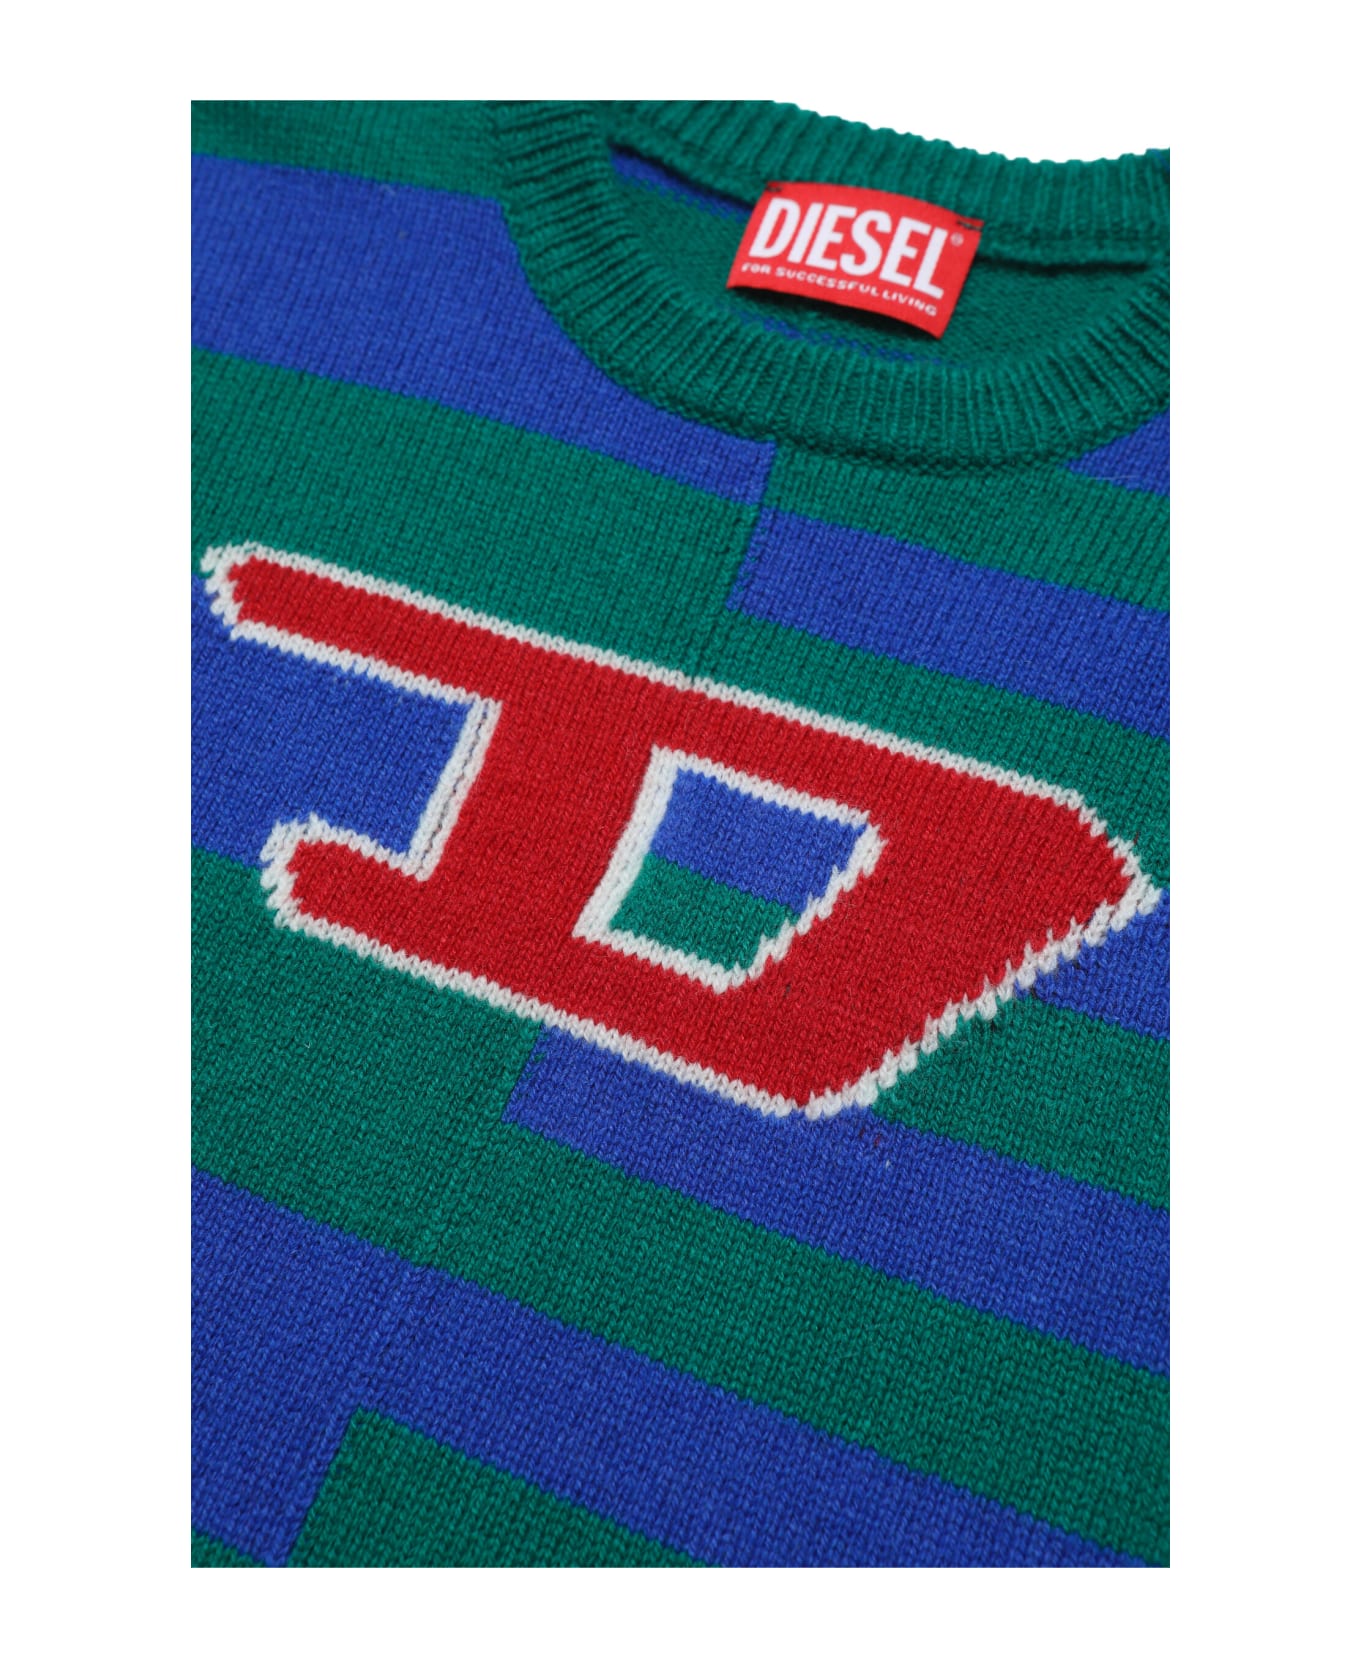 Diesel Kemply Knitwear Wool-blend Striped Logo Sweater - Verde